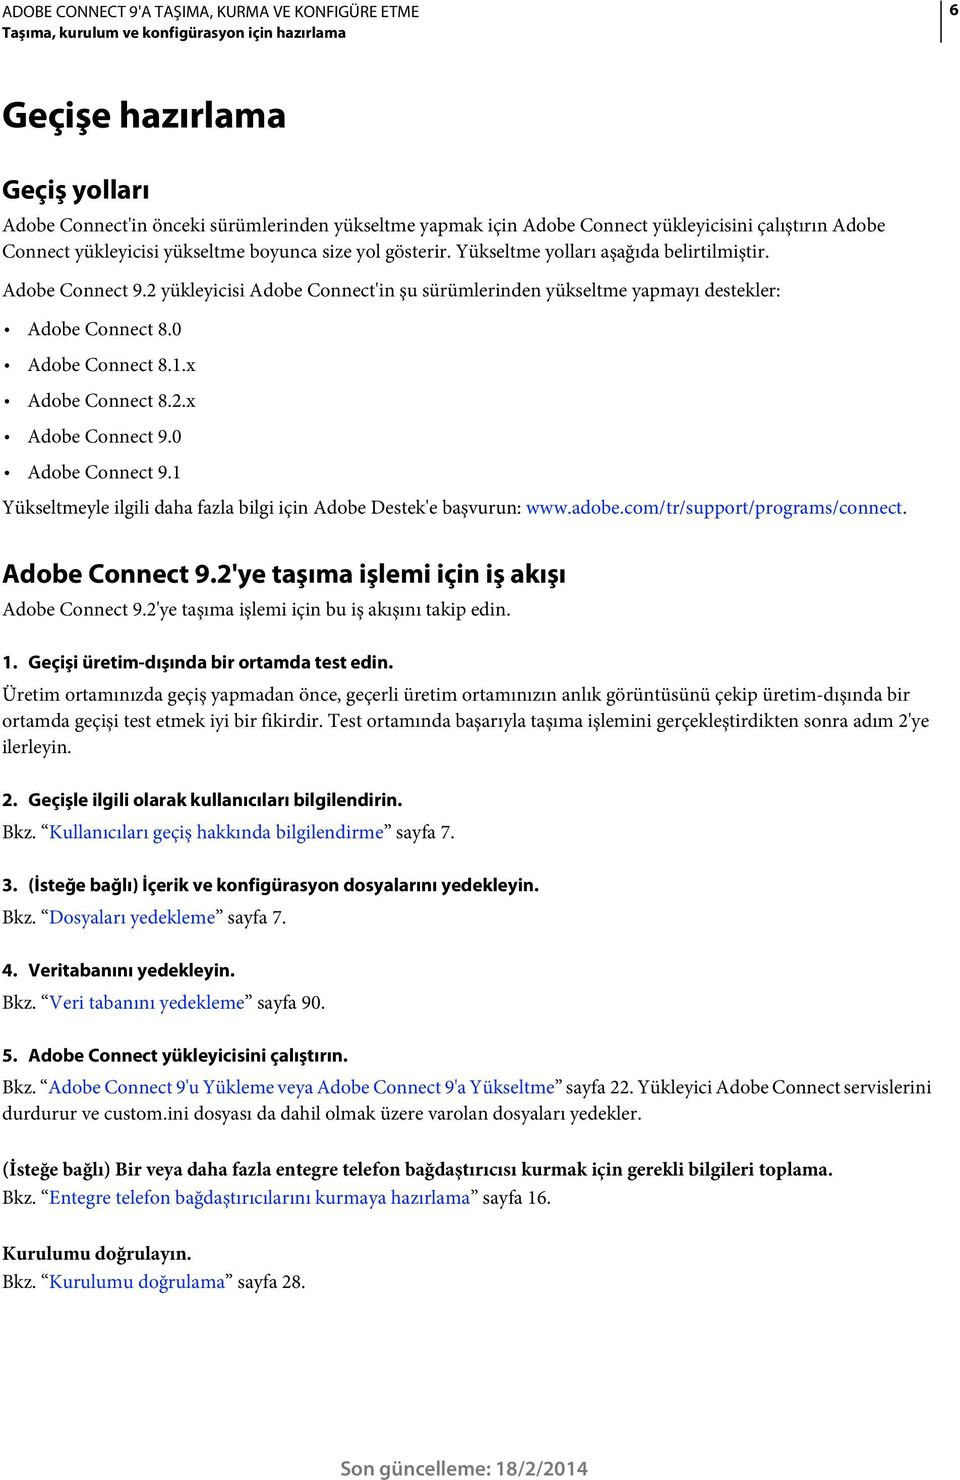 0 Adobe Connect 8.1.x Adobe Connect 8.2.x Adobe Connect 9.0 Adobe Connect 9.1 Yükseltmeyle ilgili daha fazla bilgi için Adobe Destek'e başvurun: www.adobe.com/tr/support/programs/connect.